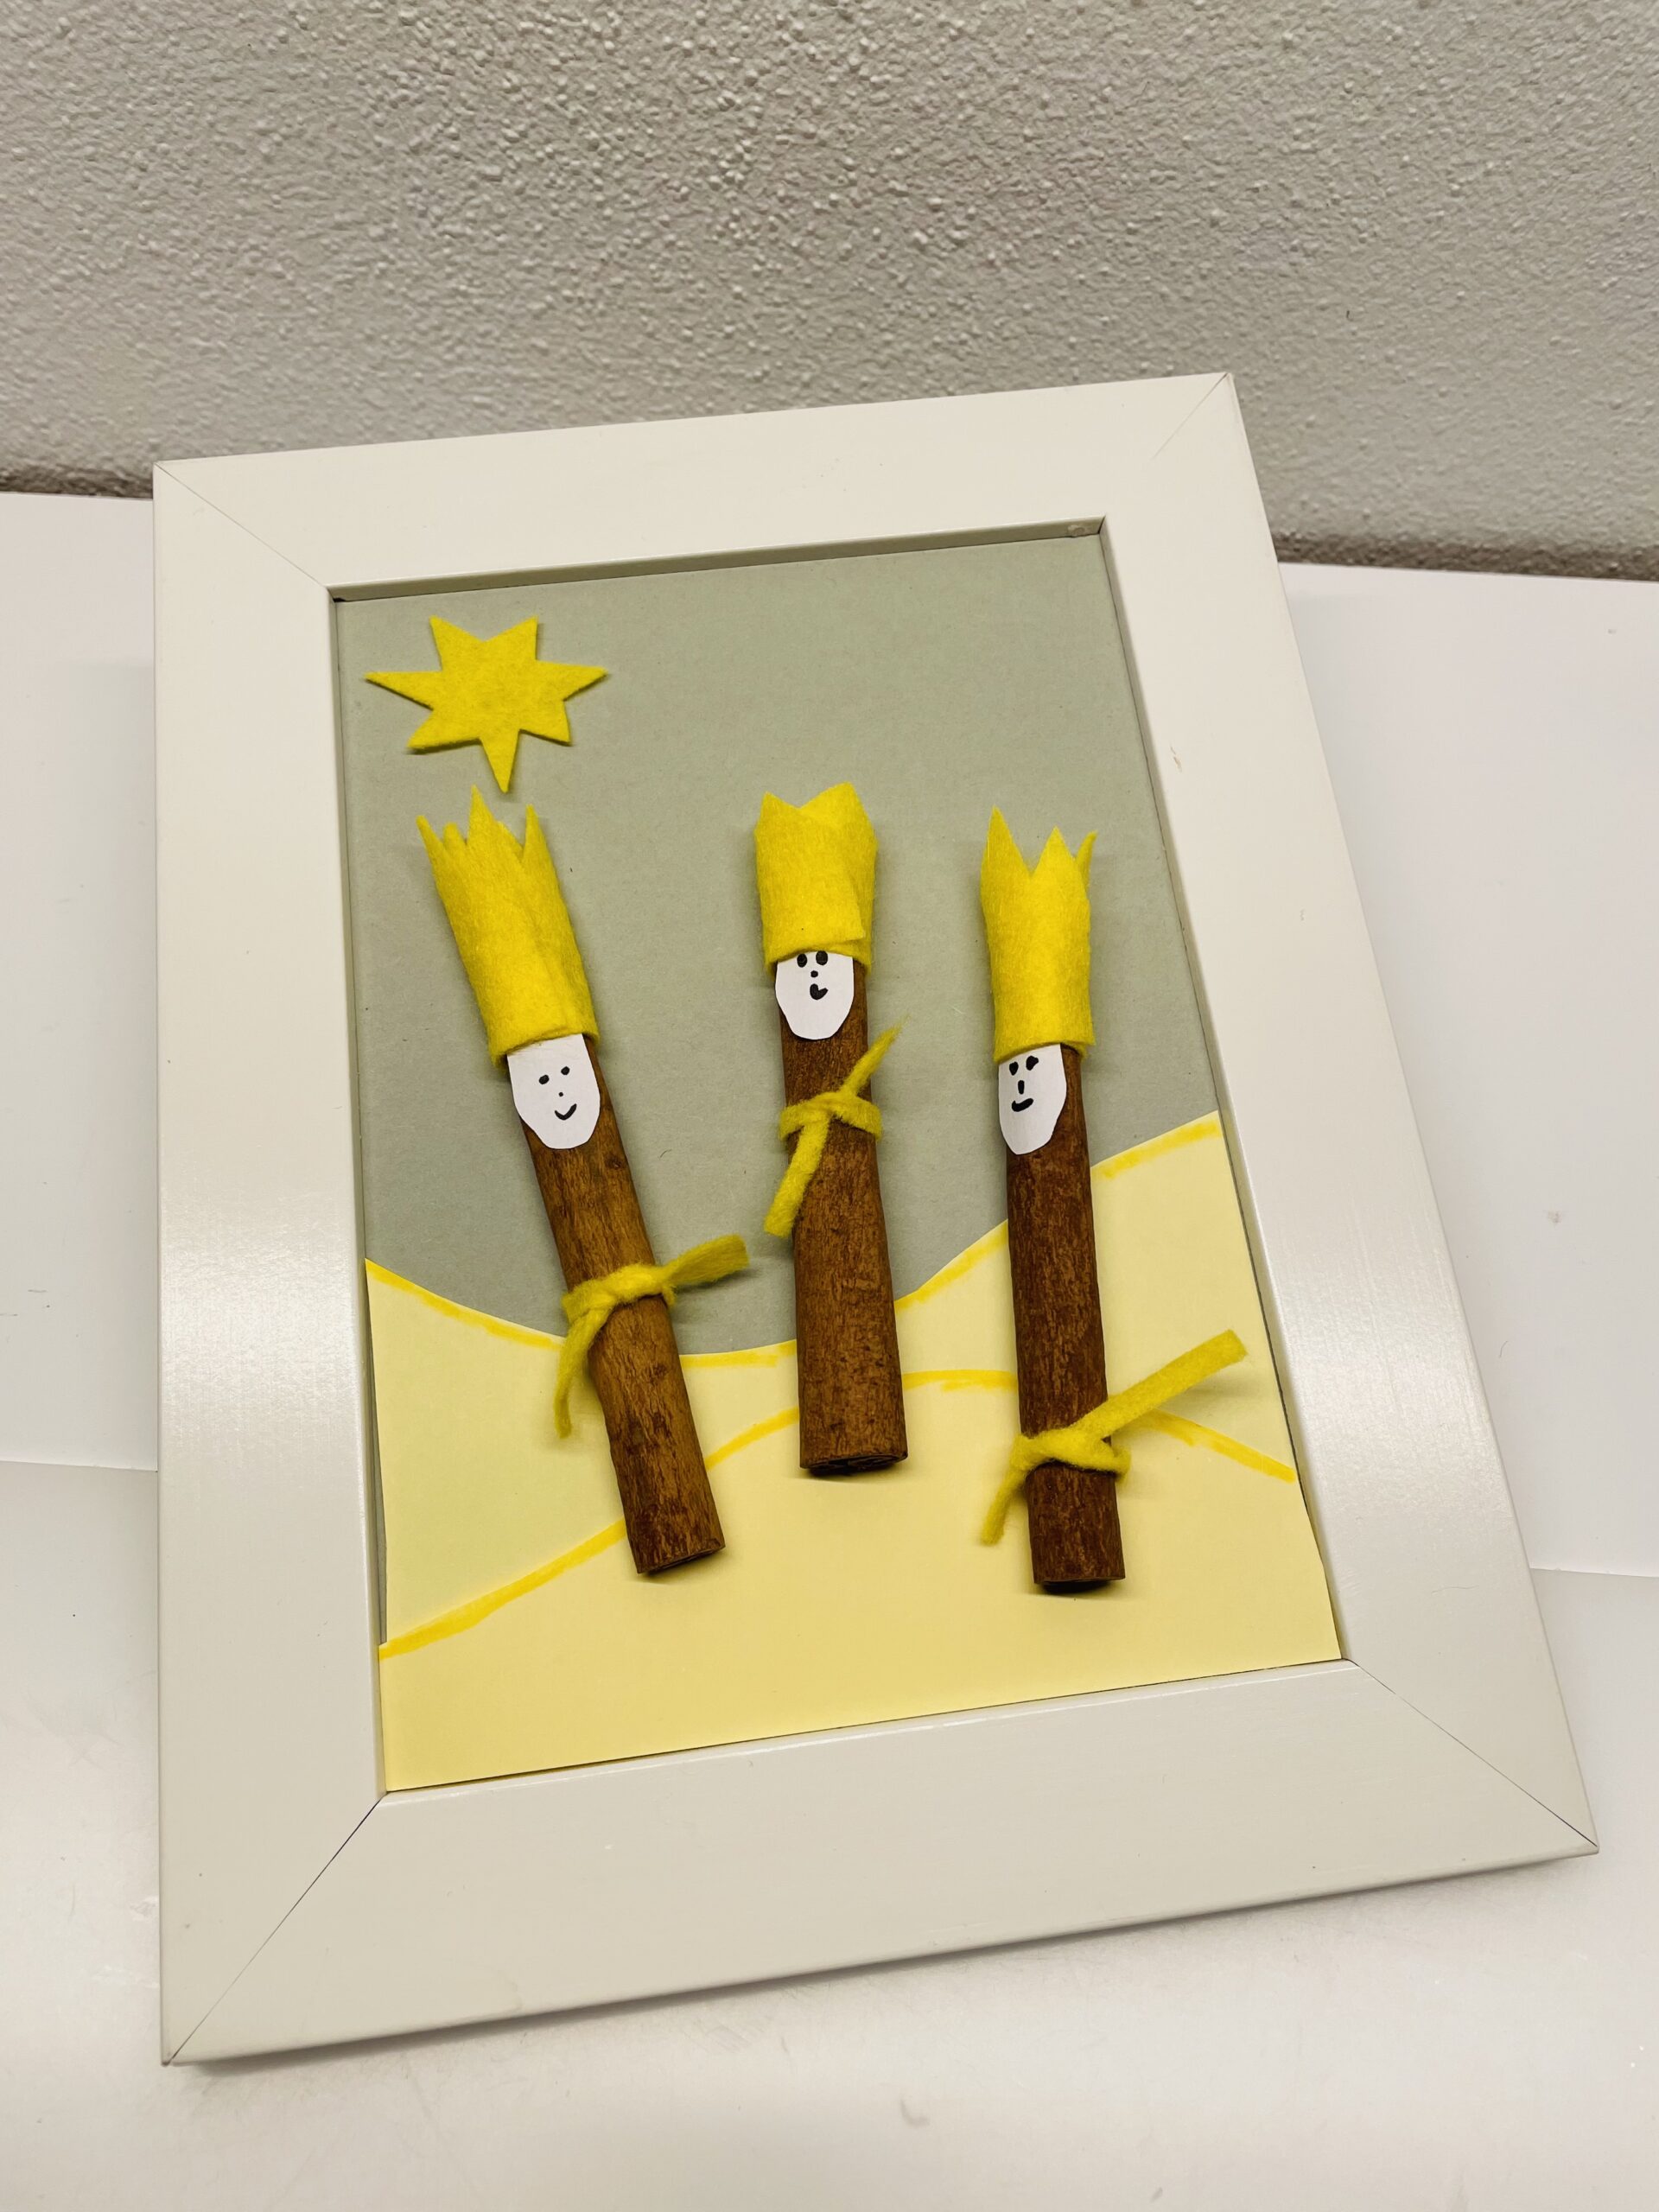 Bild zum Schritt 25 für das Bastel- und DIY-Abenteuer für Kinder: 'Fertig ist euer Rahmen mit den drei Königen.'